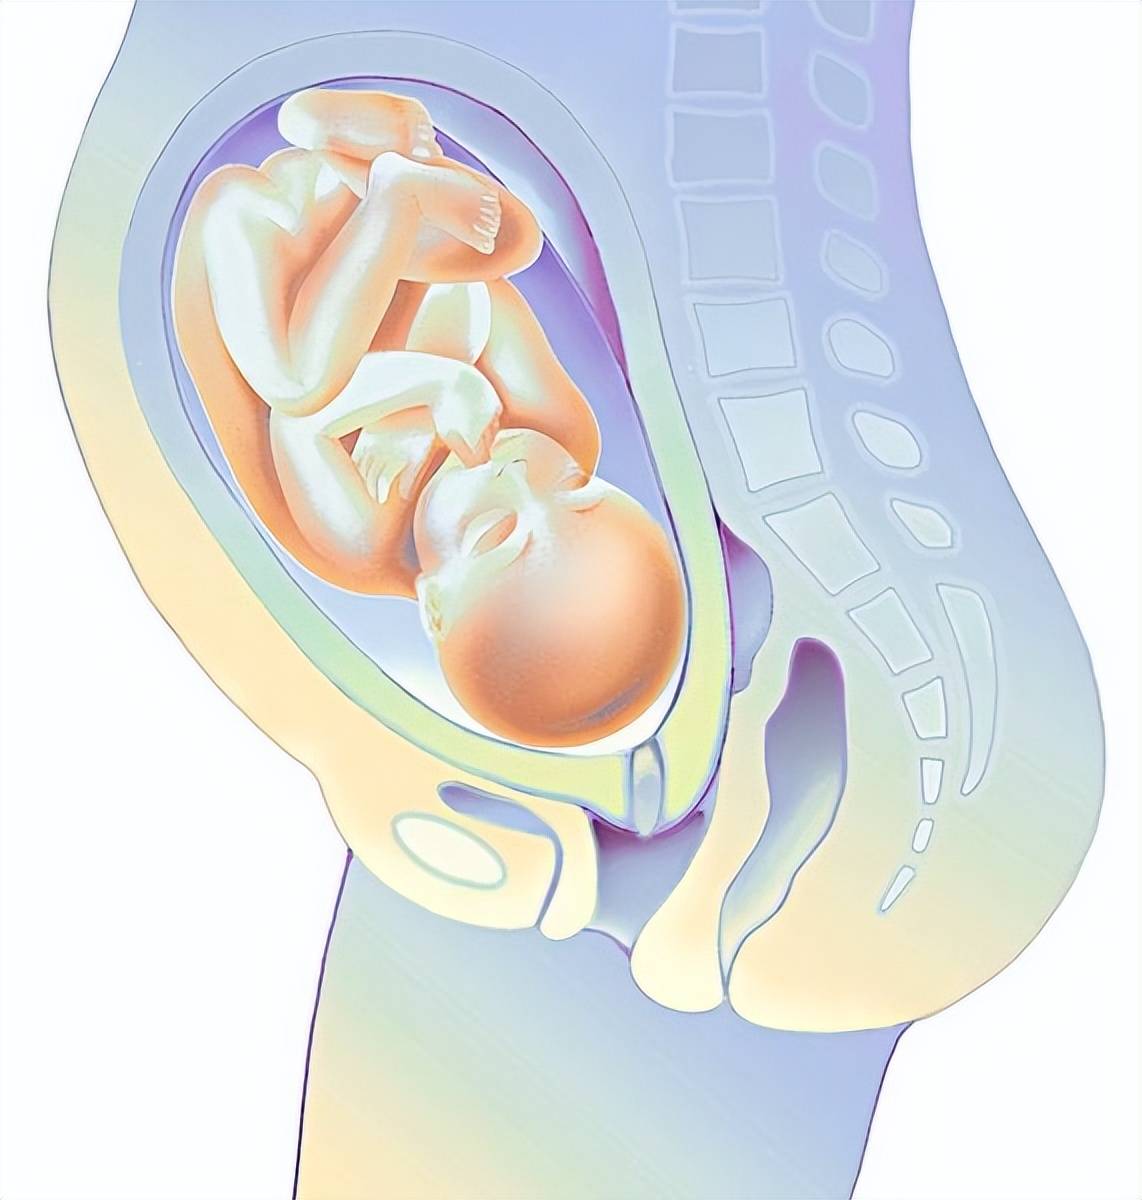 宫内囊性结构图片